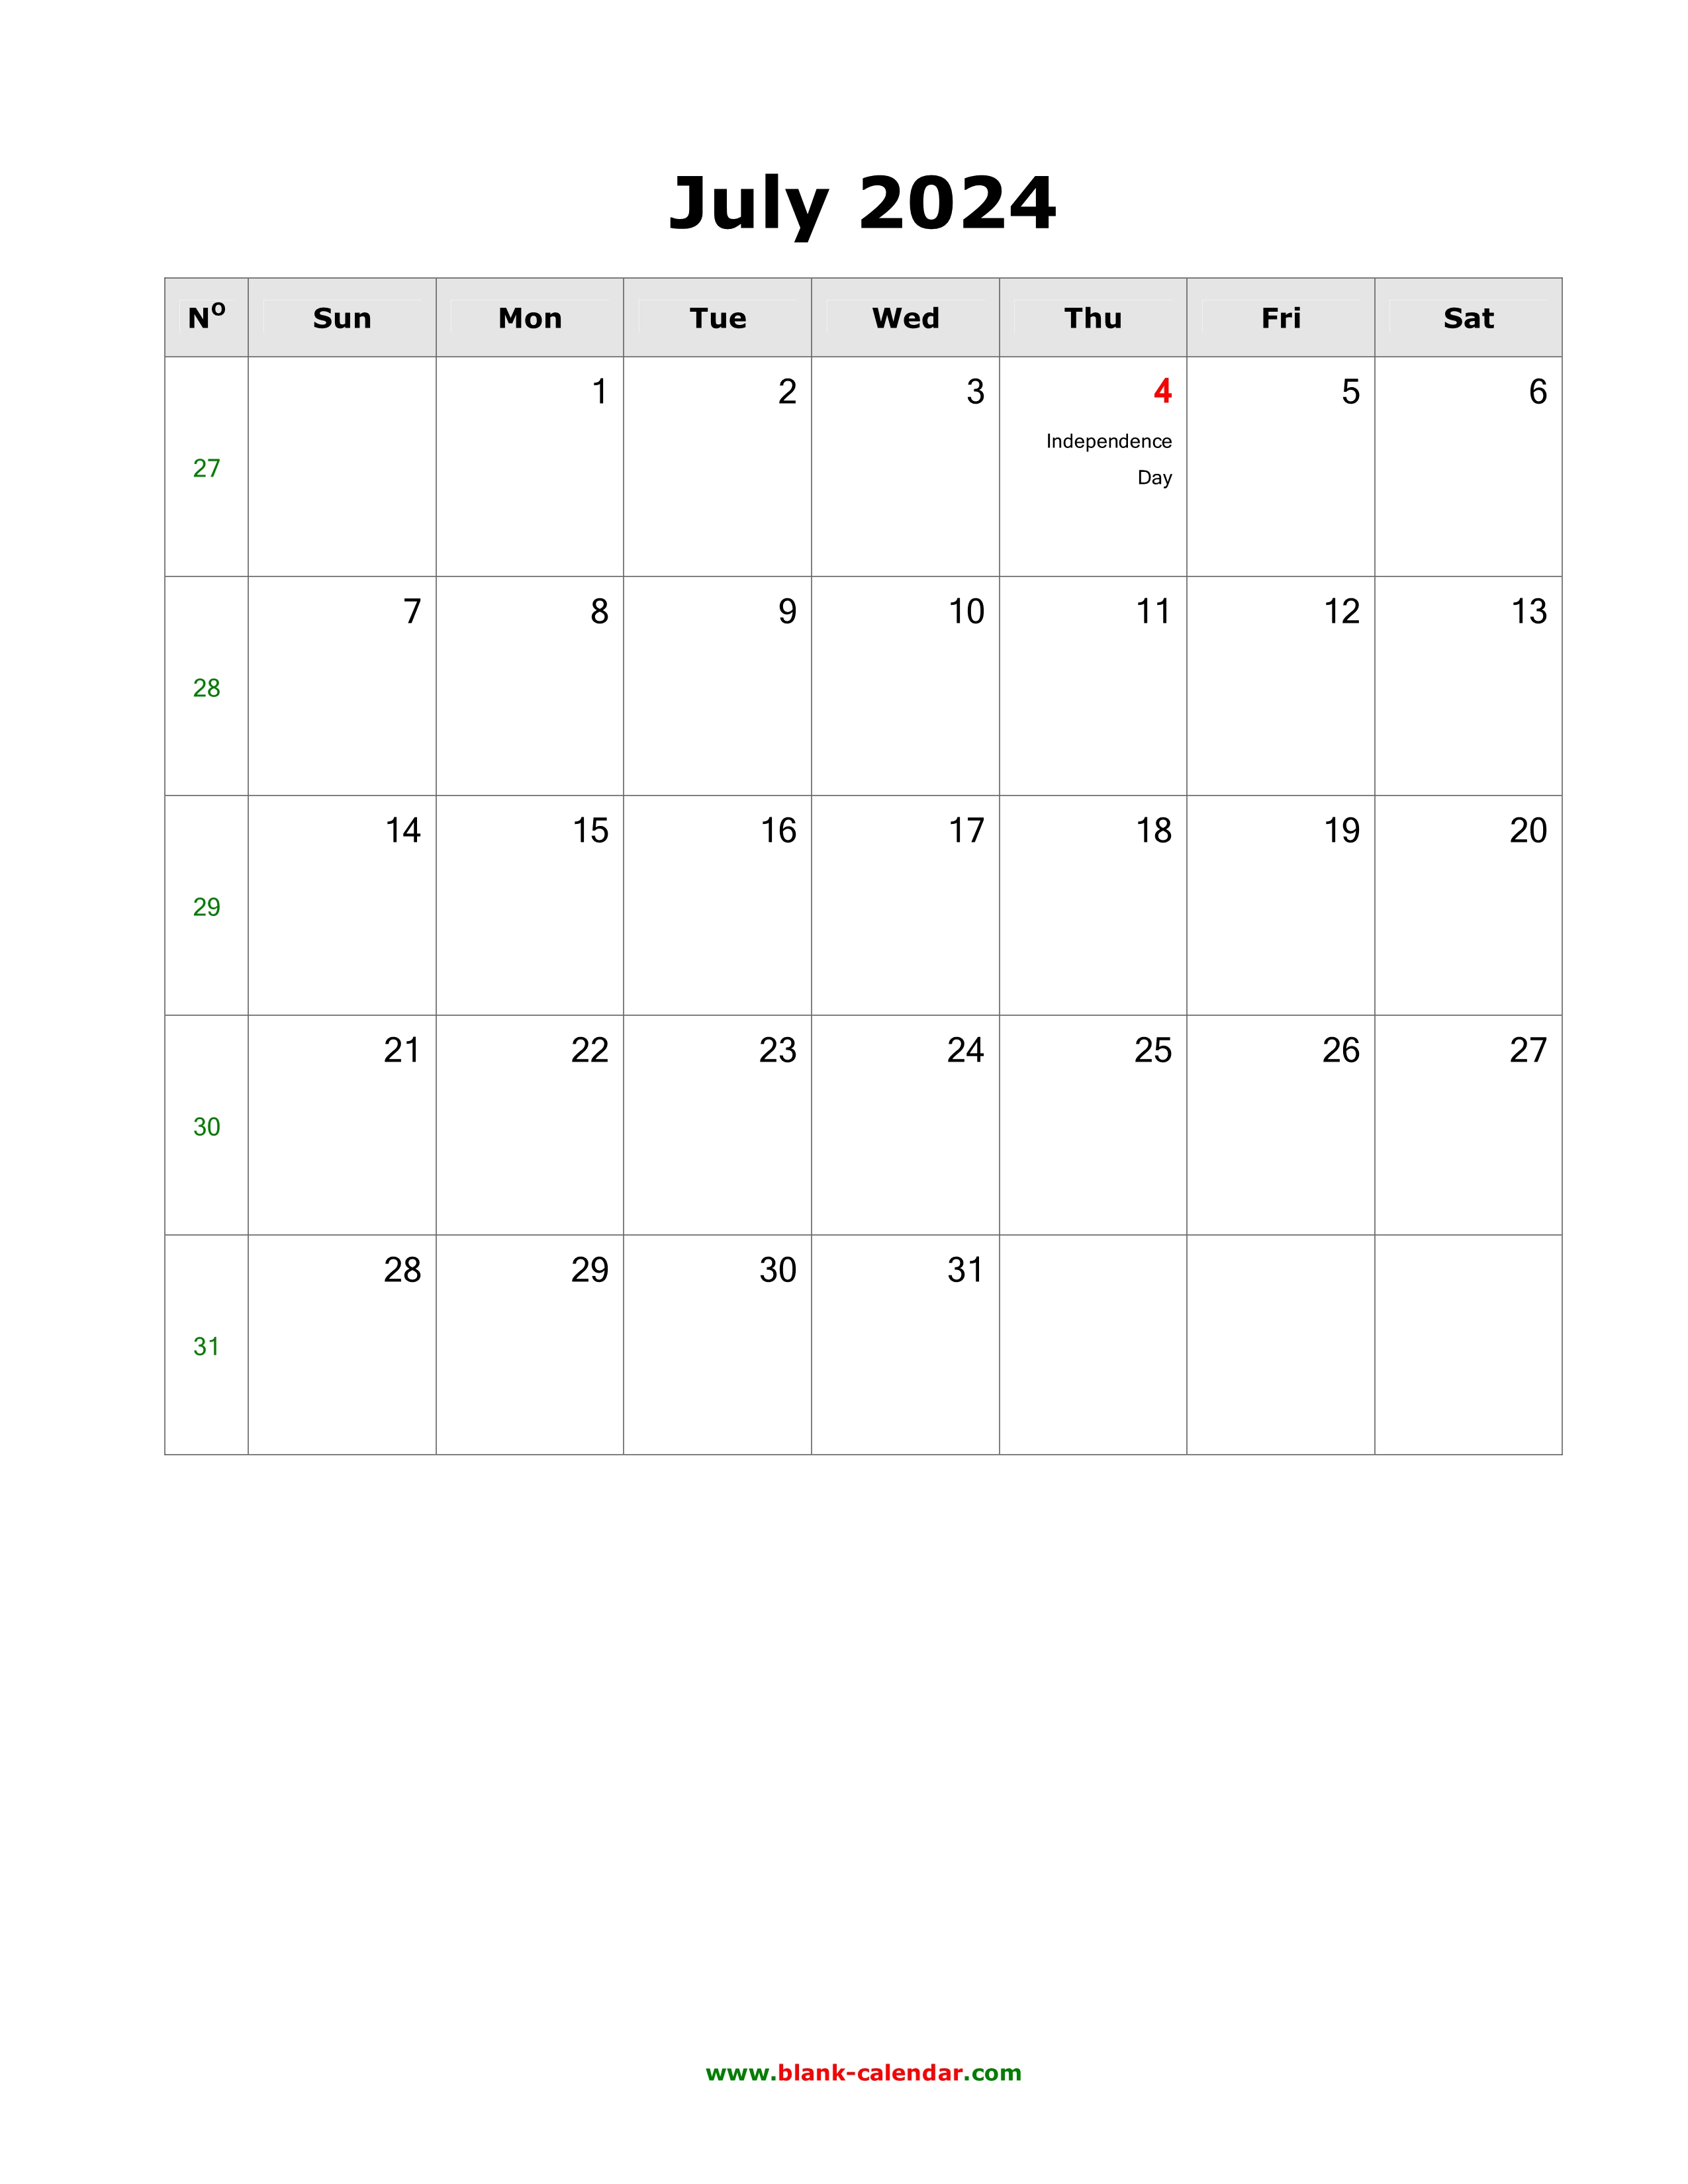 July 2024 Calendar Excel Download Aadhar Pan Nari Pearla